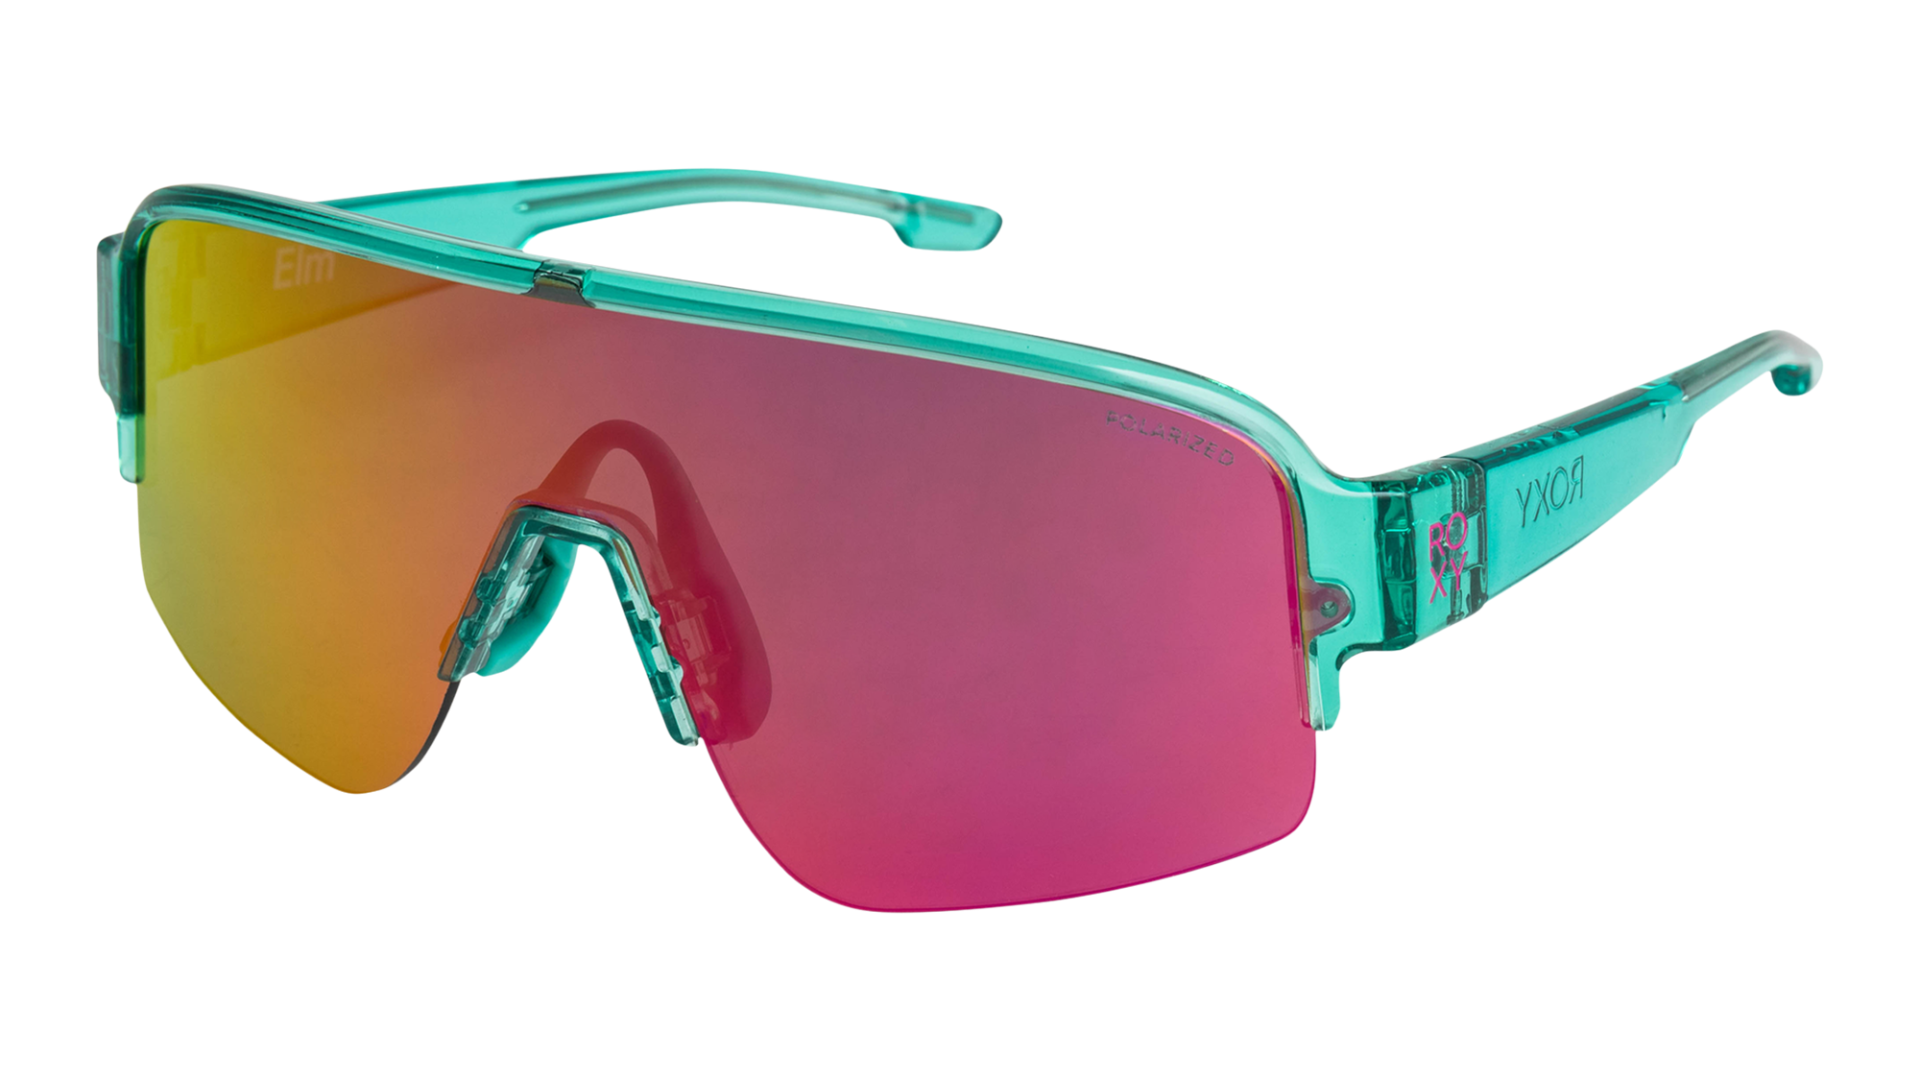 Roxy 2023 Sunglasses Preview SOURCE - Boardsport